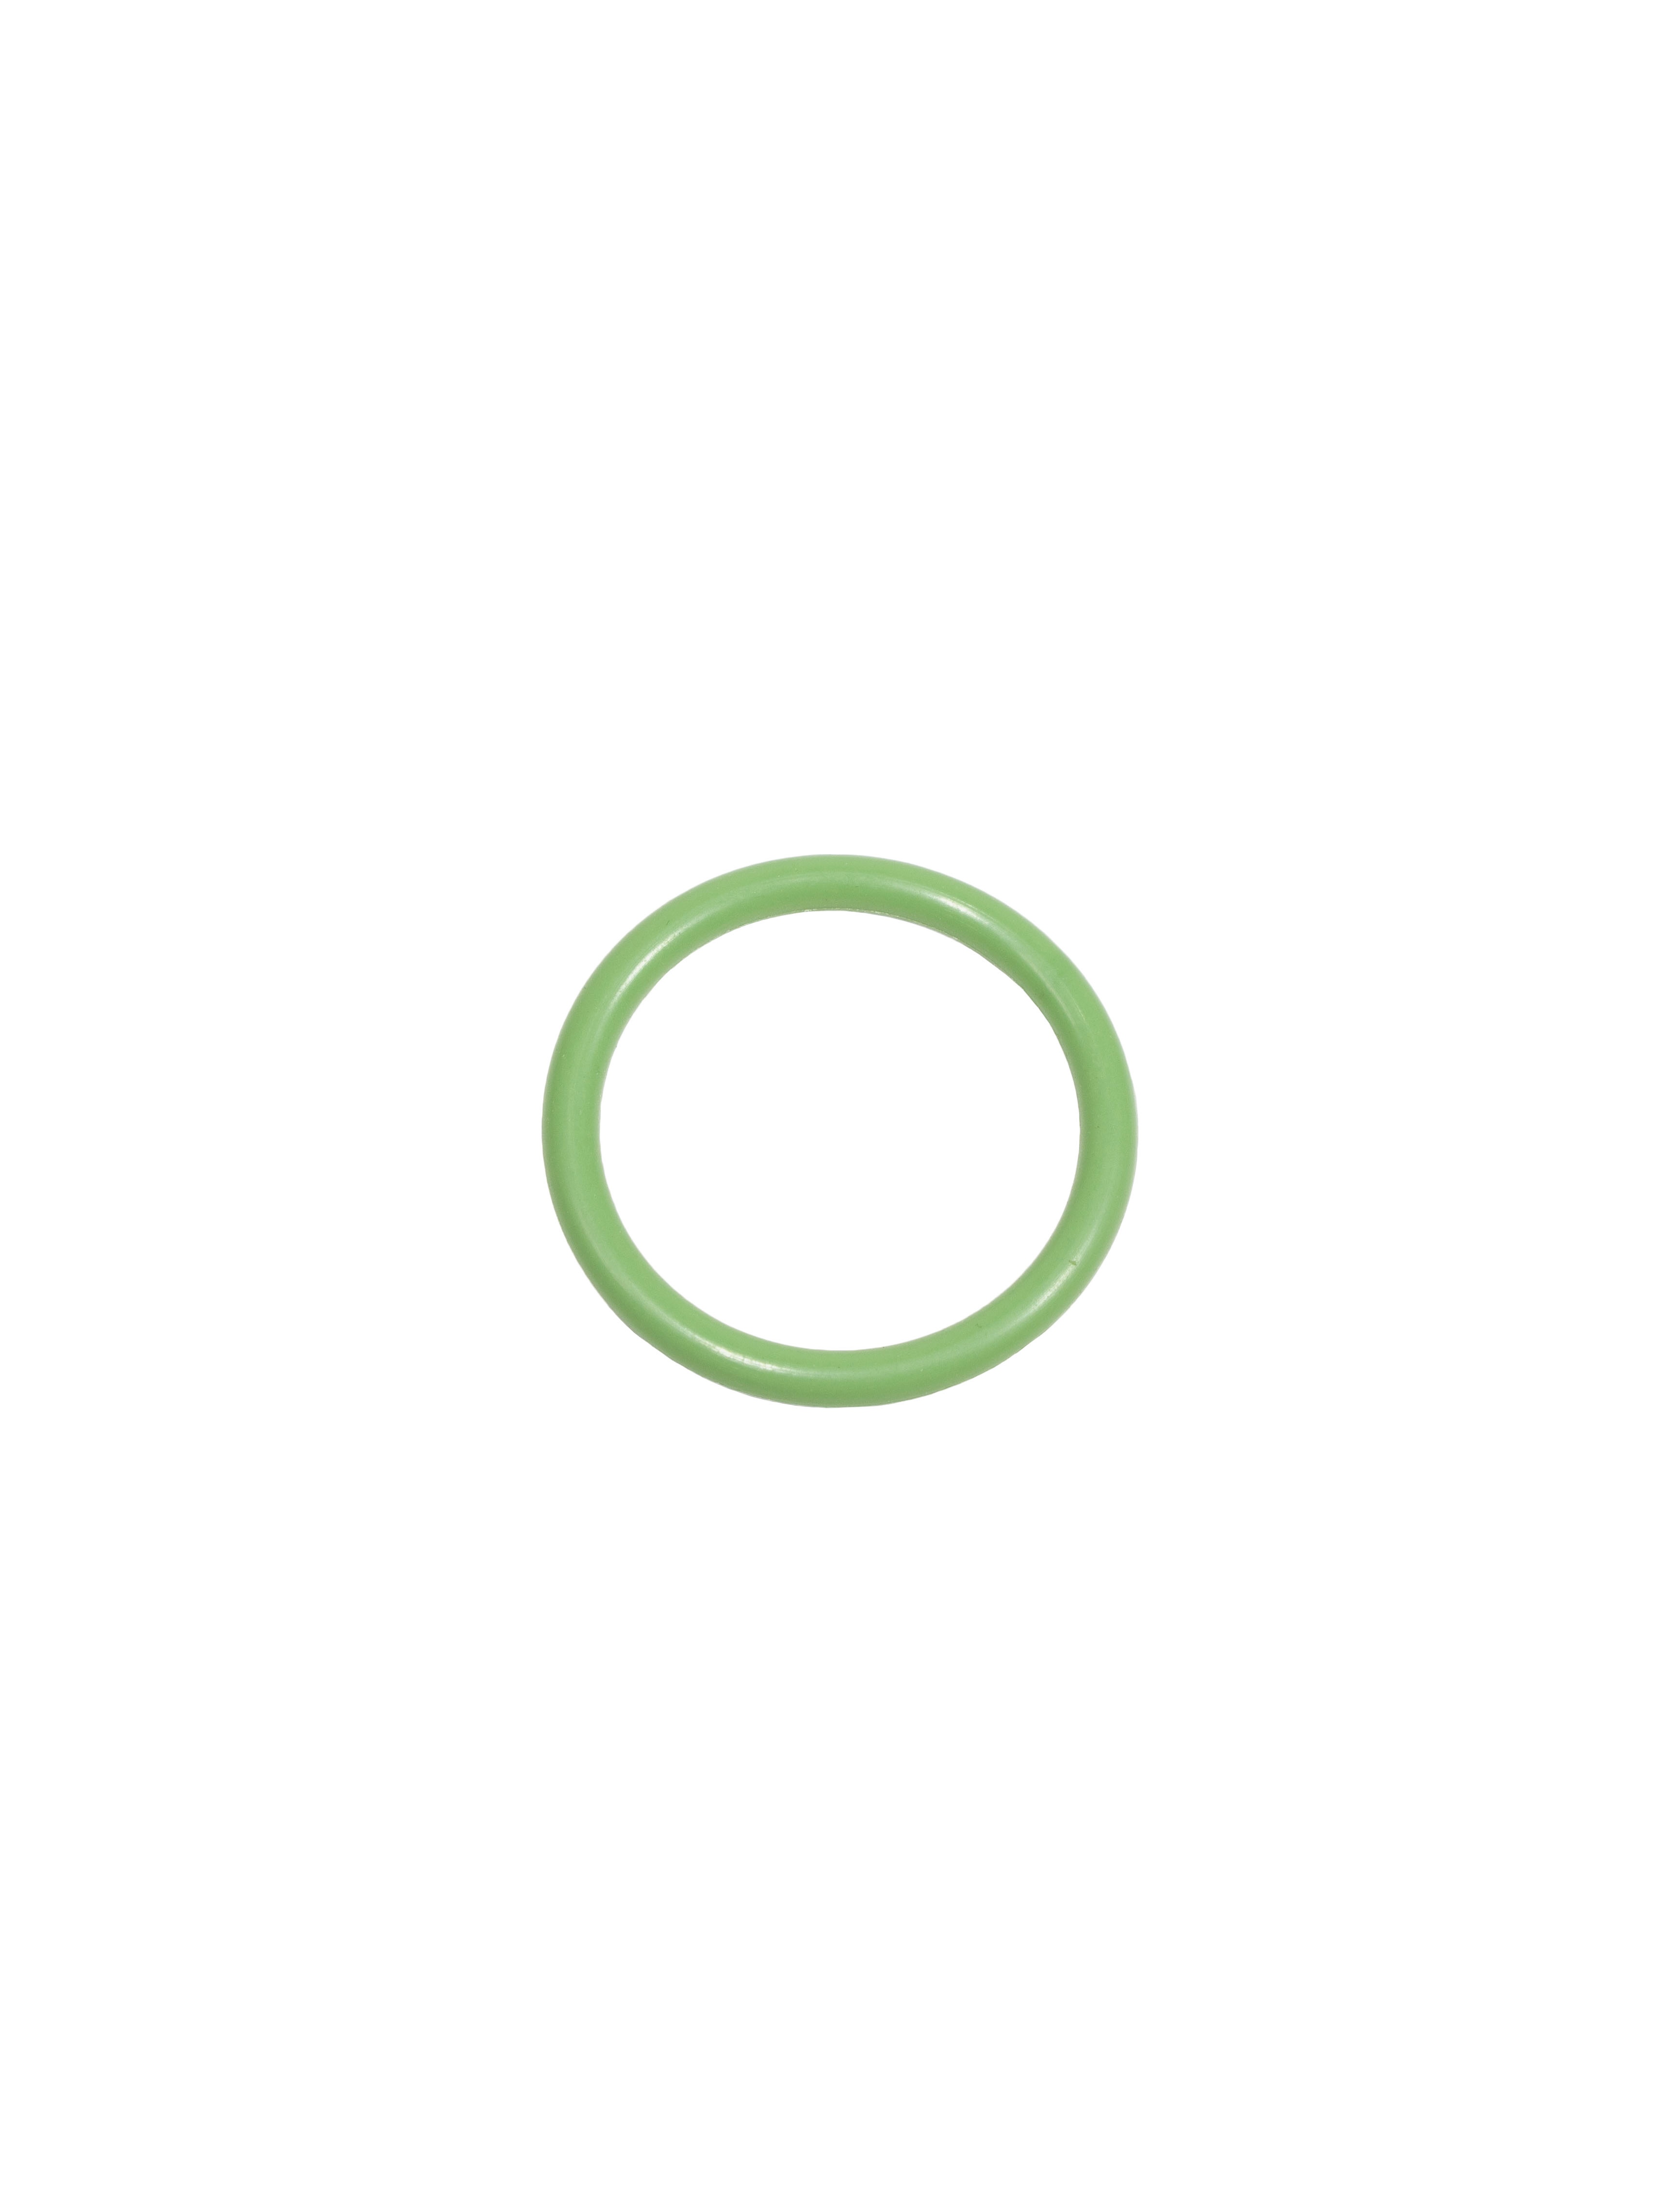 Кольцо круглого сечения радиатора отработавших газов 5340.1213054 (040-048-46,ФСИ 65)